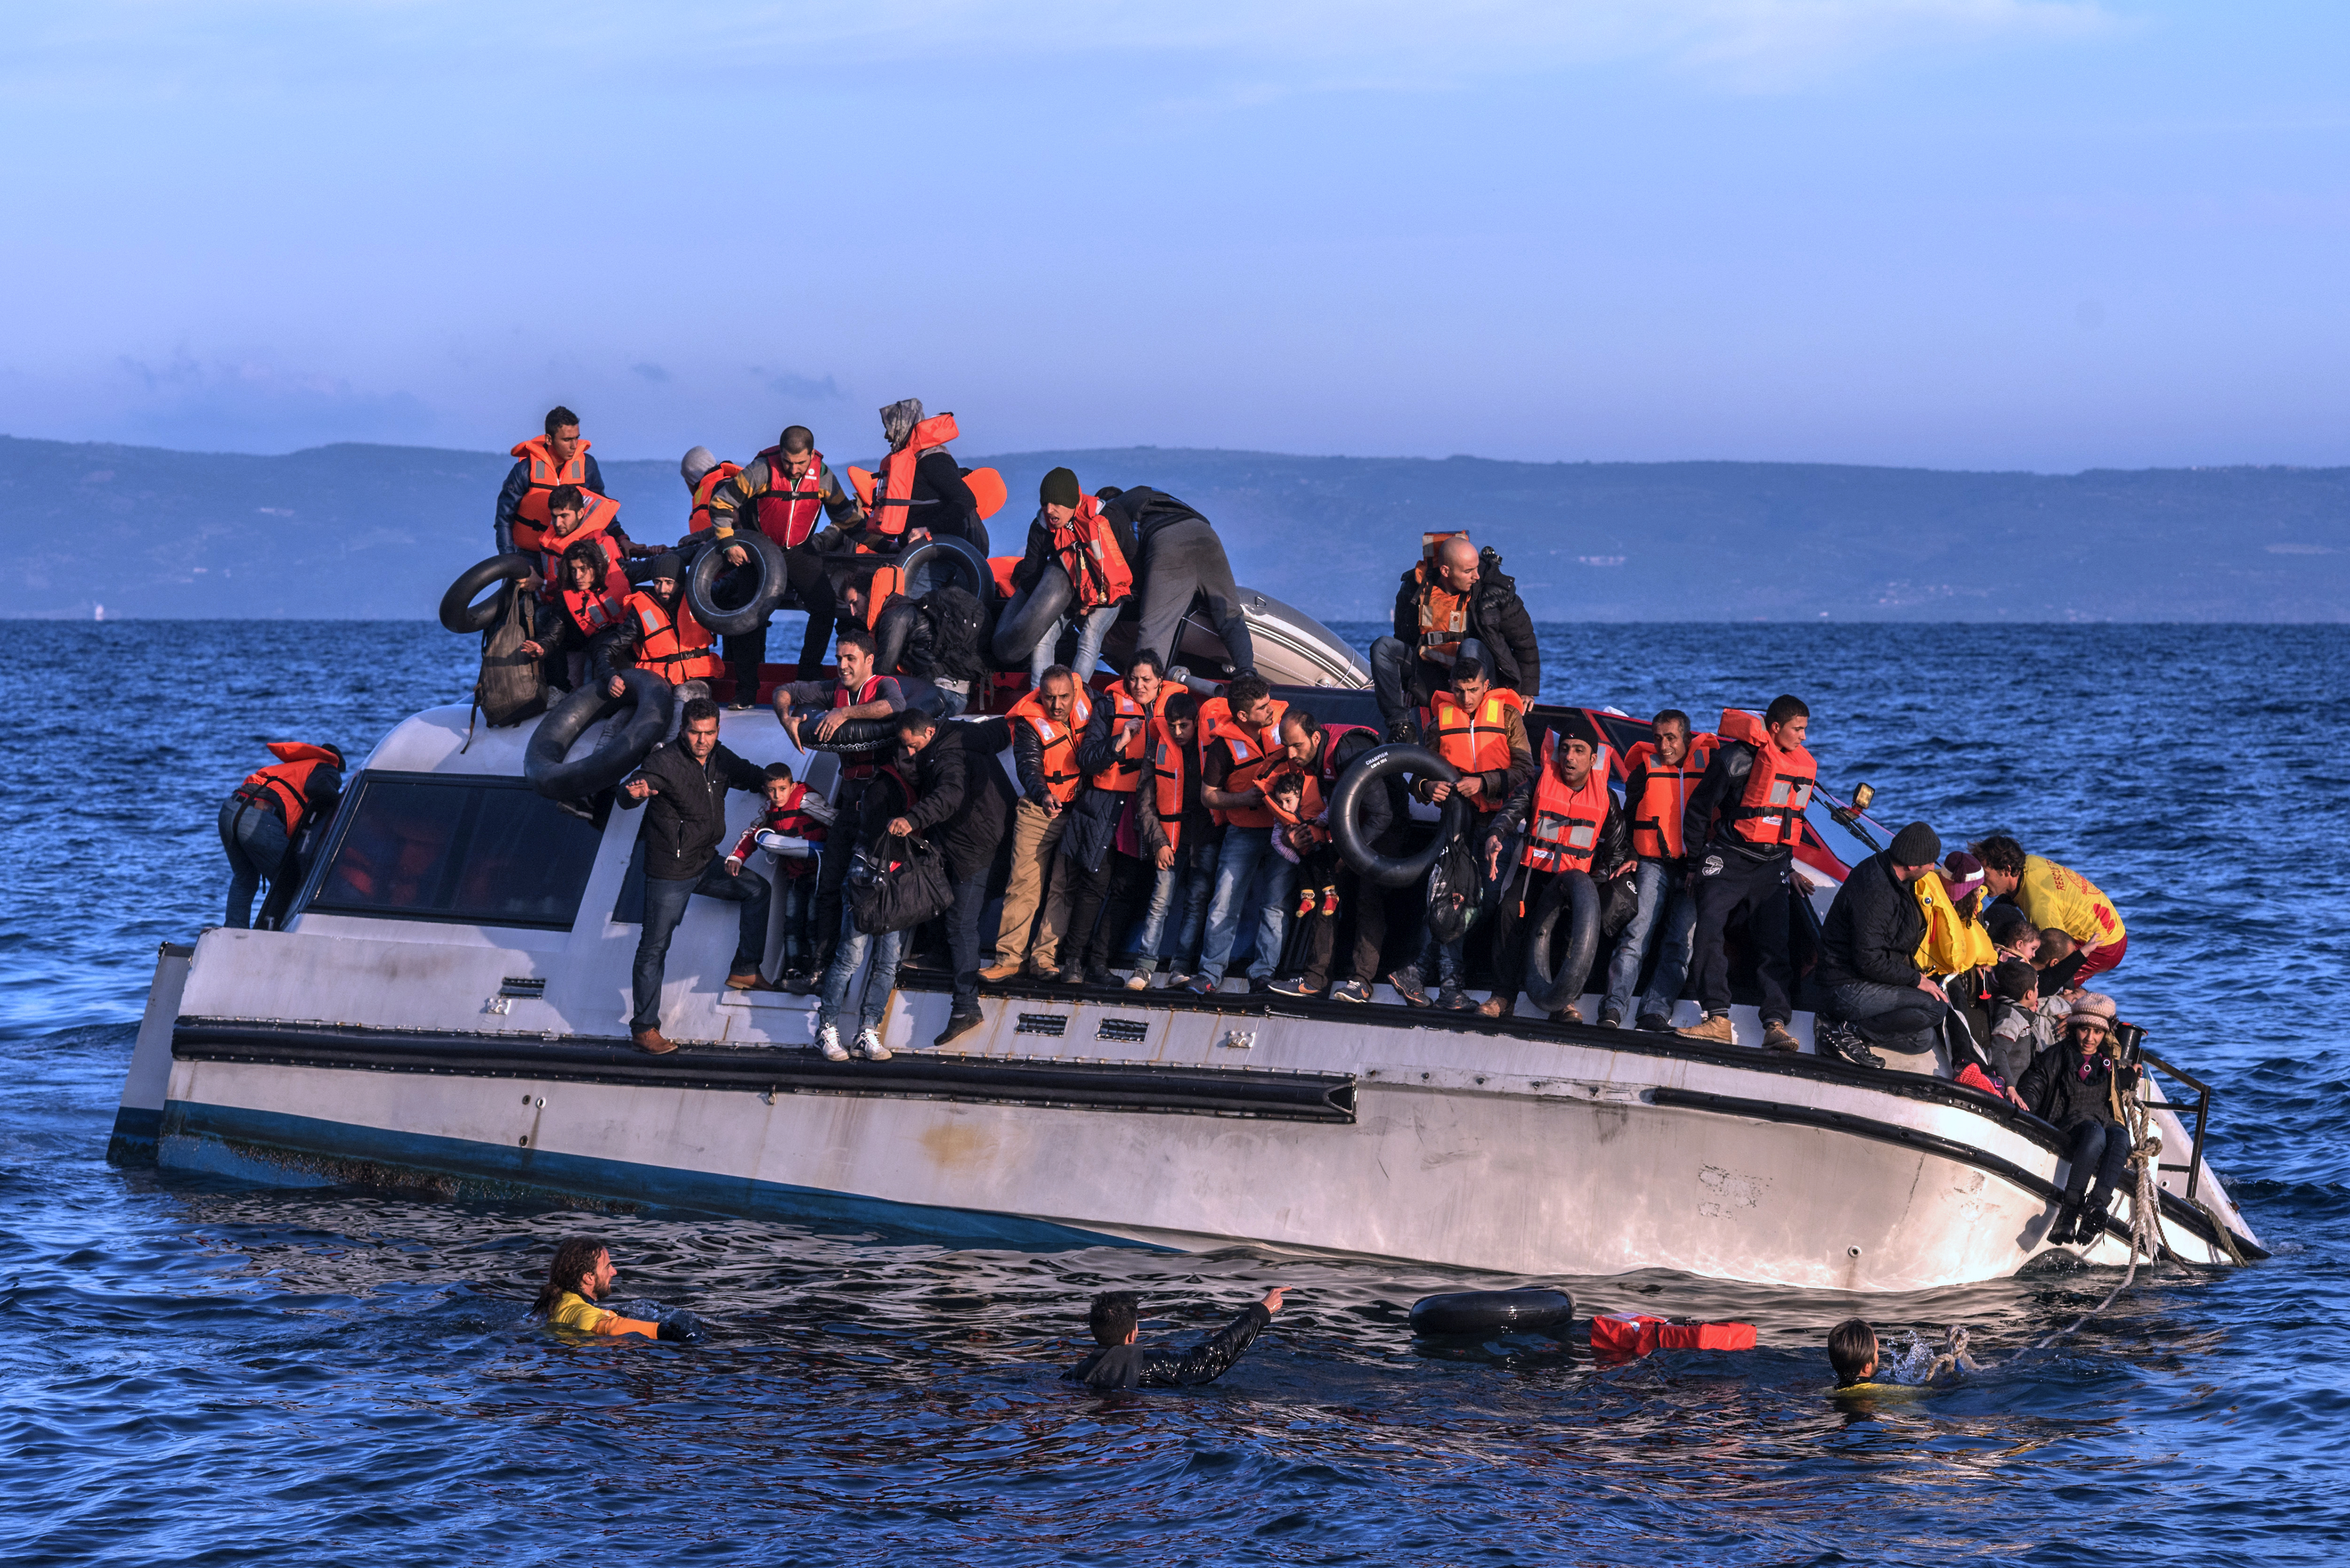 Brod koji želi blokirati spašavanje izbjeglica ušao u mediteranske vode